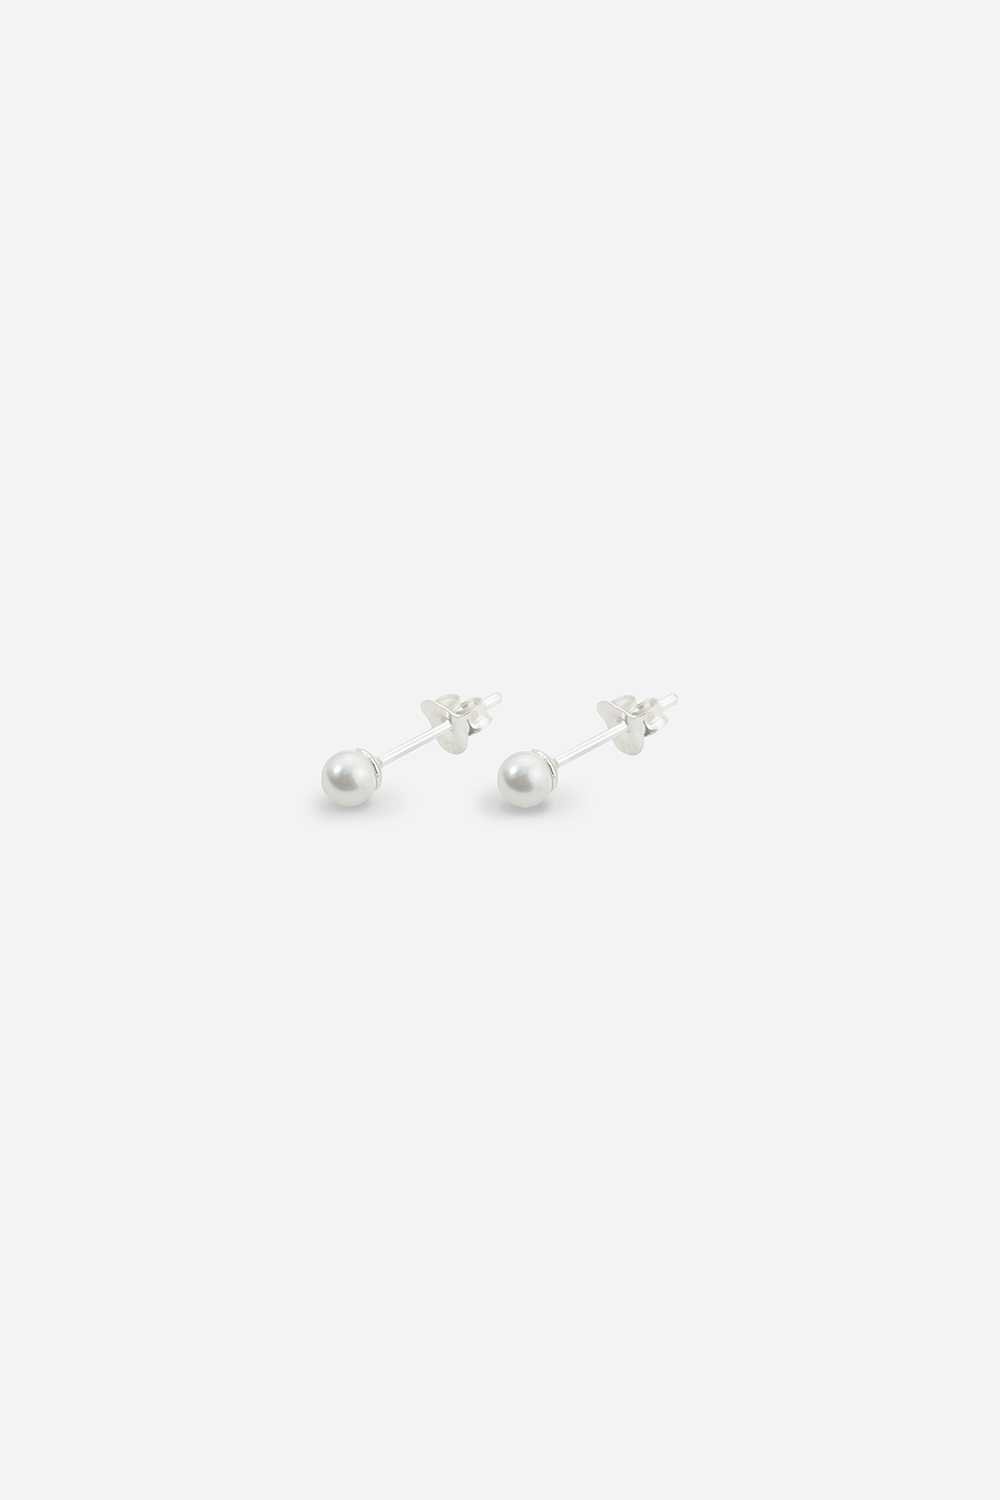 4mm Faux Pearl Sterling Silver Stud Earrings